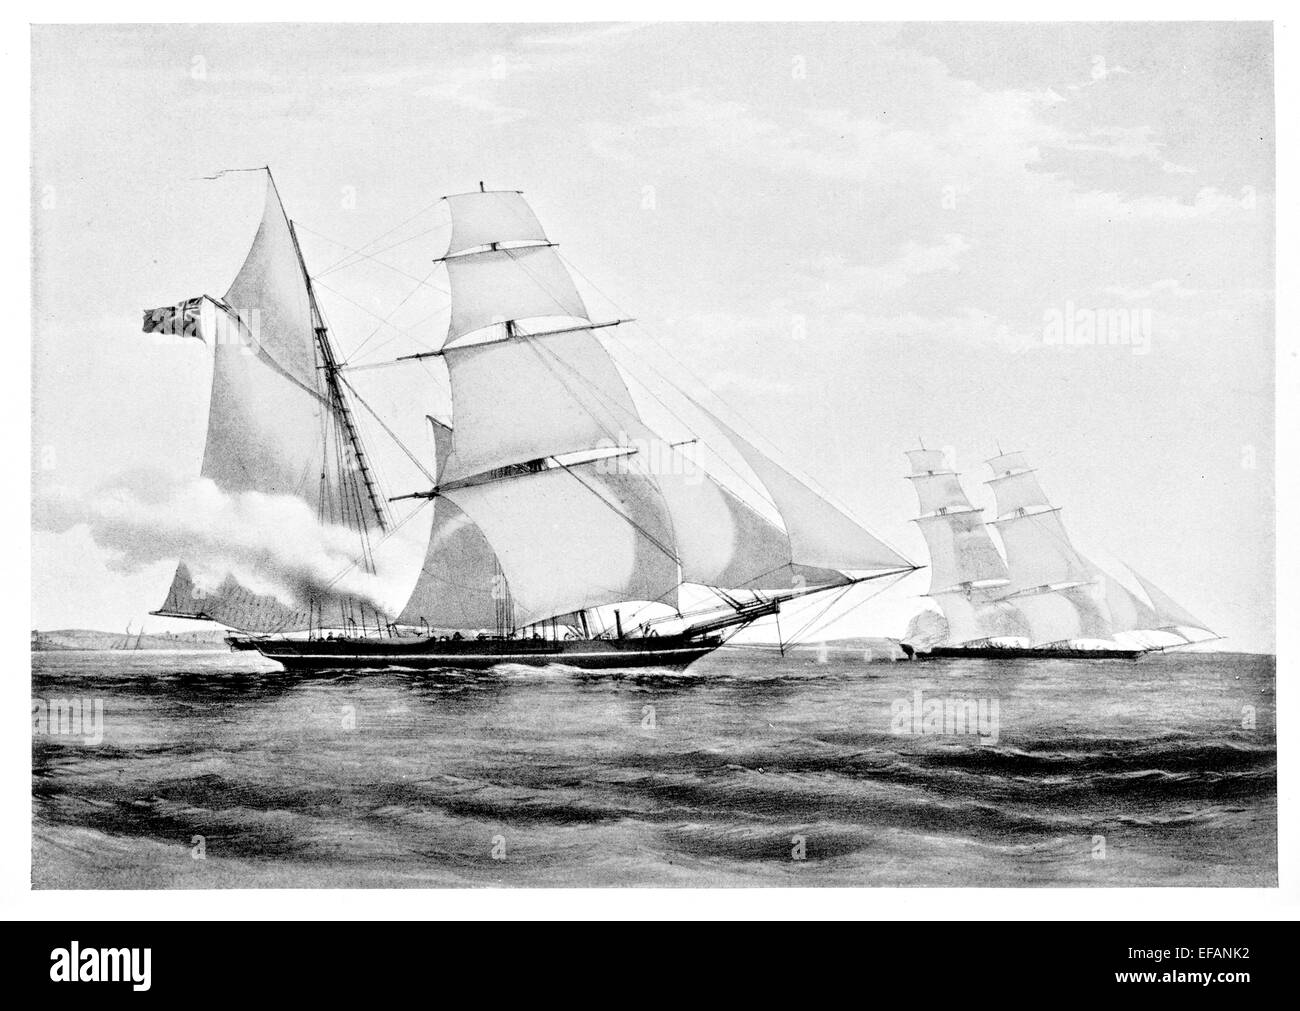 S.m. el bergantín Dolphin 3 gun 1836. Sirve contra el comercio de esclavos de la Costa Oeste de África después de 1861 a 71. Buque aduanero Sheerness Foto de stock